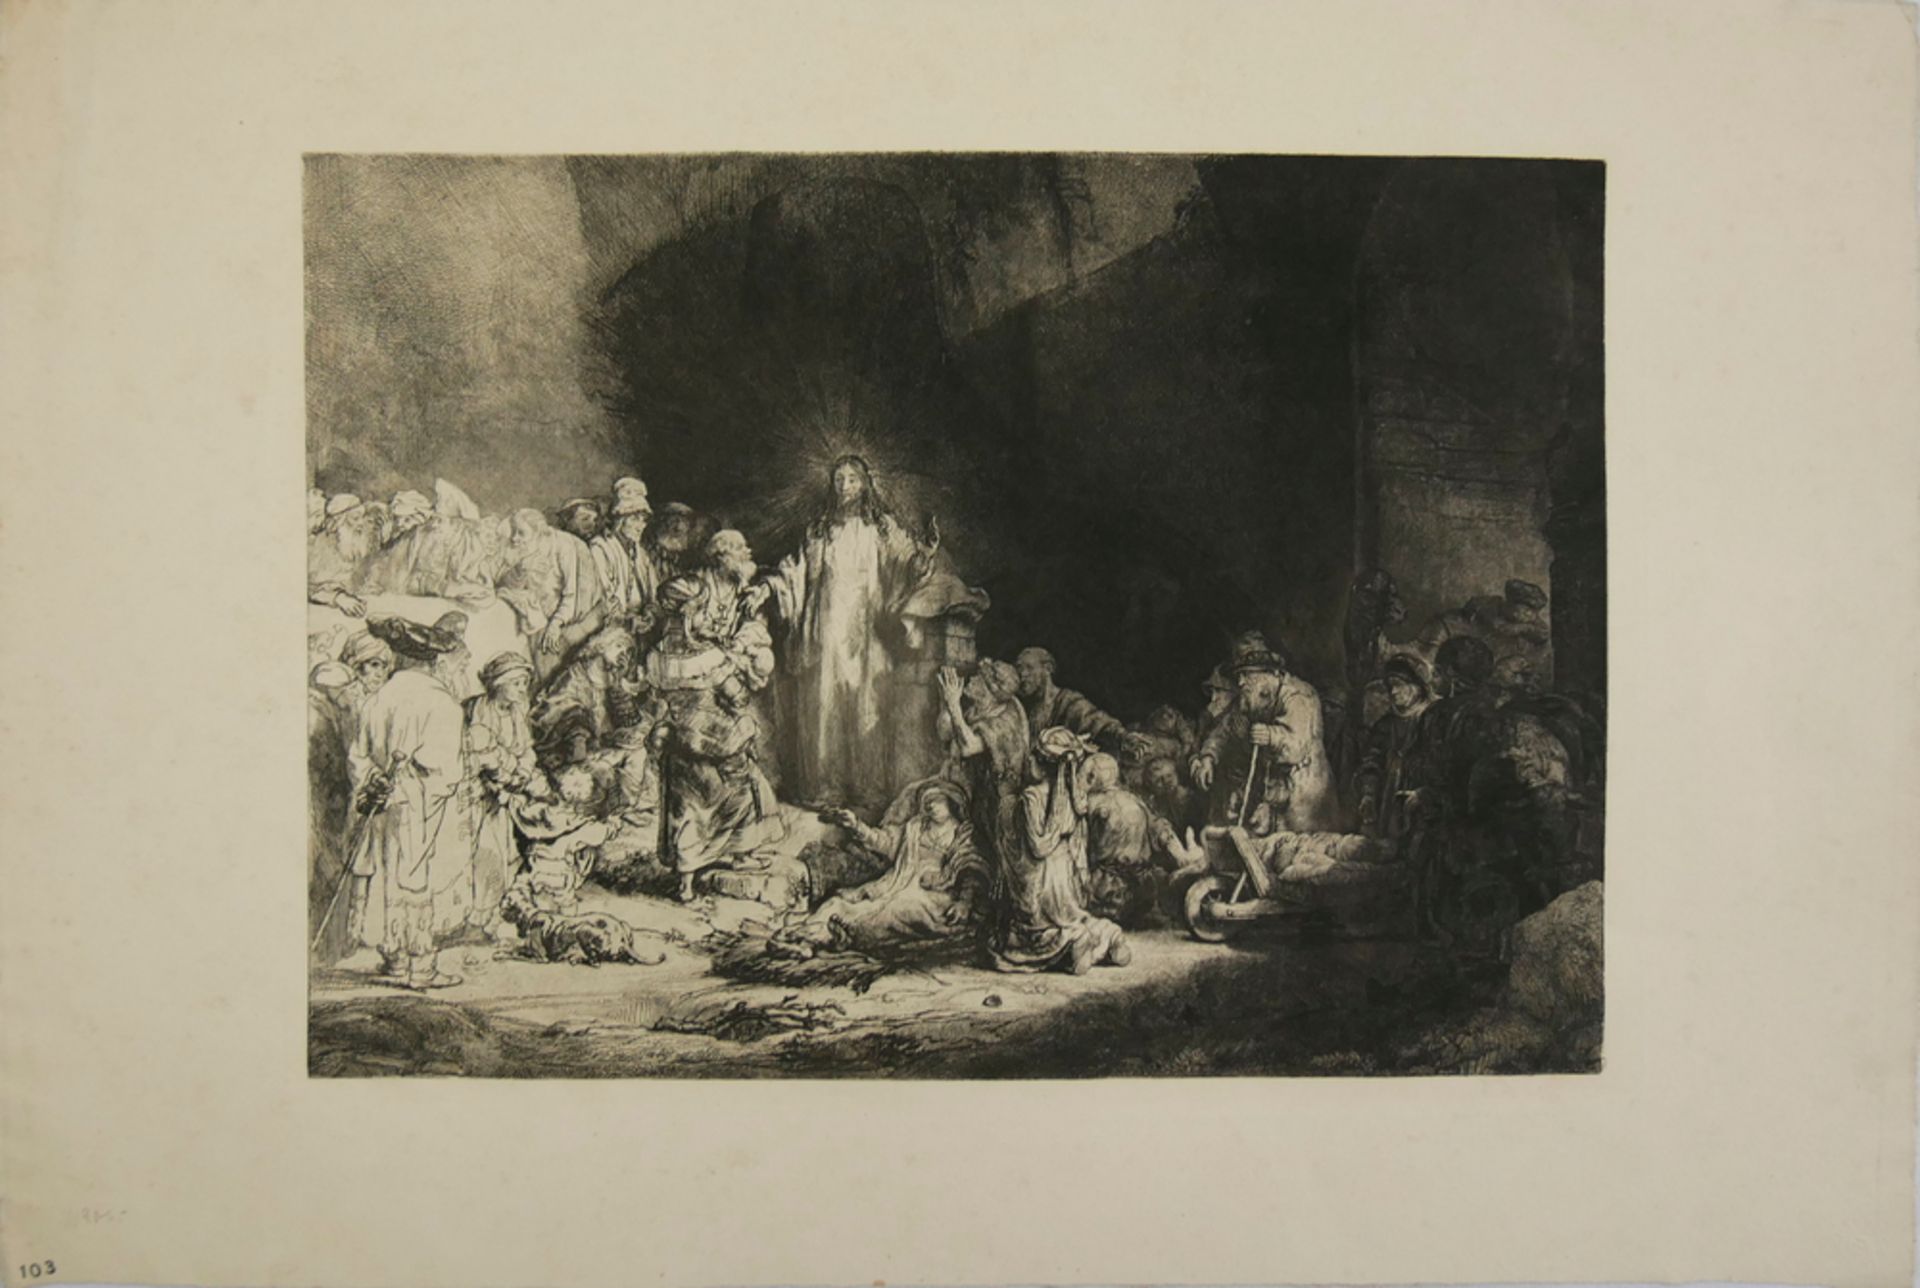 Druck-Grafik "Christus heilt die Kranken", von Rembrandt van Rijn, auf der Rückseite Stempel "